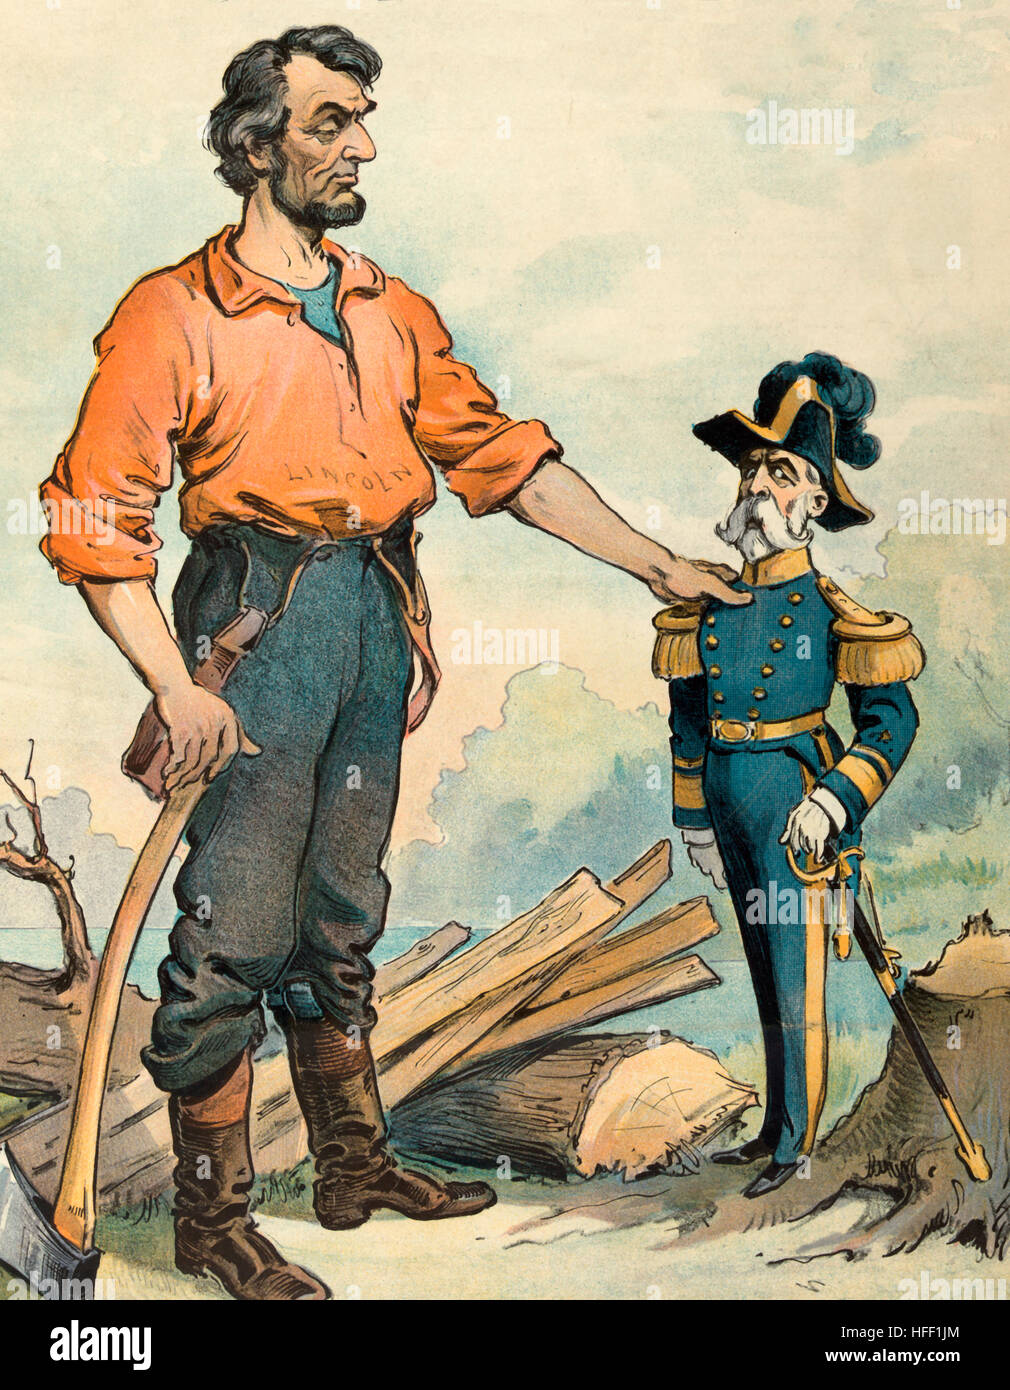 Sampson vs. Morgan - 1901 politische Karikatur zeigt eine übergroße Abraham Lincoln, hält eine Axt Adressierung ein Diminutiv Konteradmiral William T. Sampson bezüglich des Falles Gunner Charles Morgan Bemühungen in Richtung Fortschritt in der Rang in der US Navy. Stockfoto